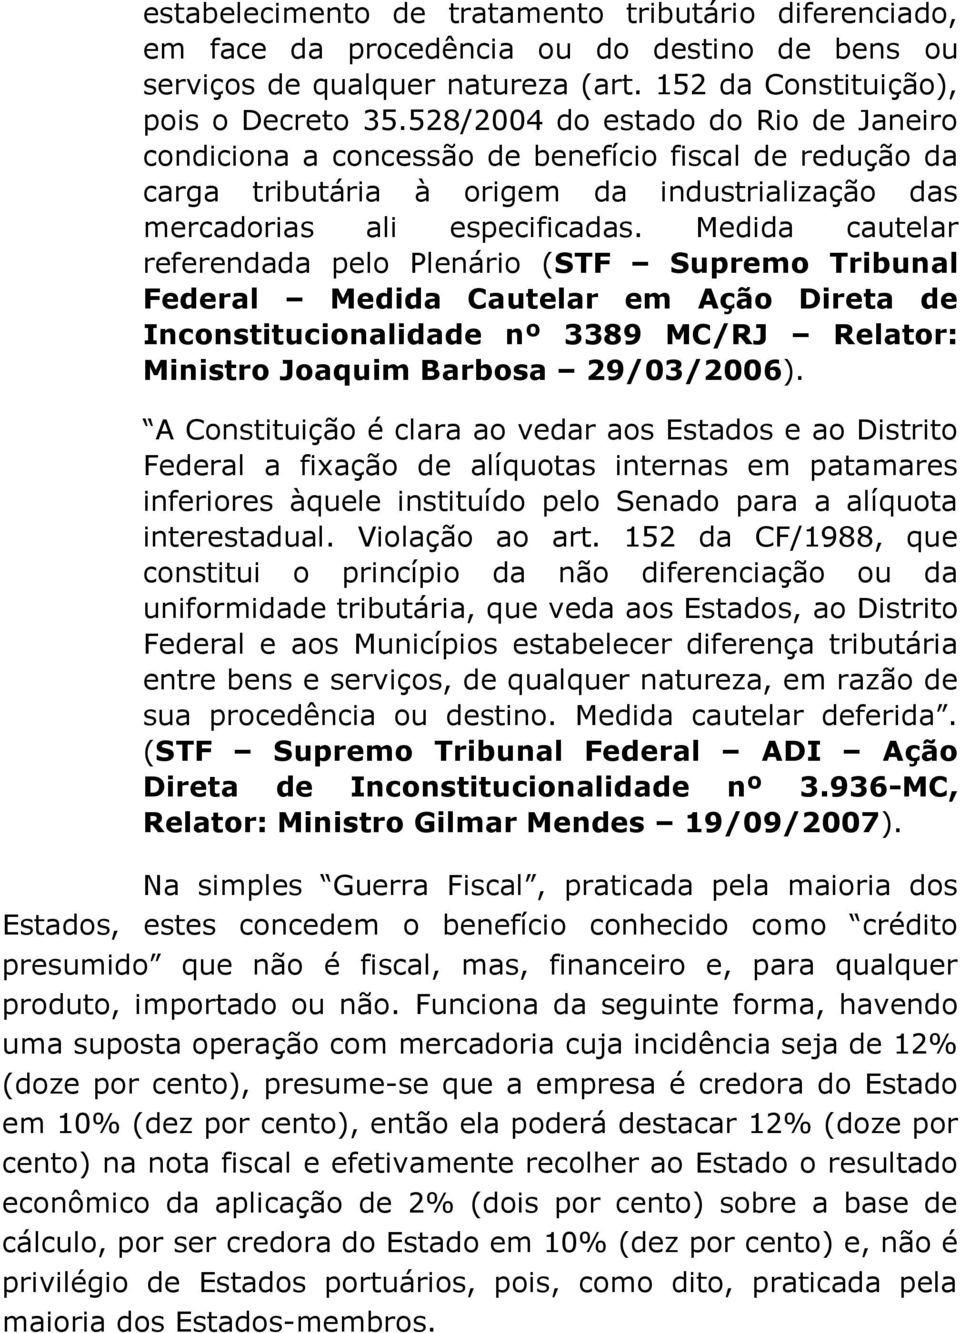 Medida cautelar referendada pelo Plenário (STF Supremo Tribunal Federal Medida Cautelar em Ação Direta de Inconstitucionalidade nº 3389 MC/RJ Relator: Ministro Joaquim Barbosa 29/03/2006).